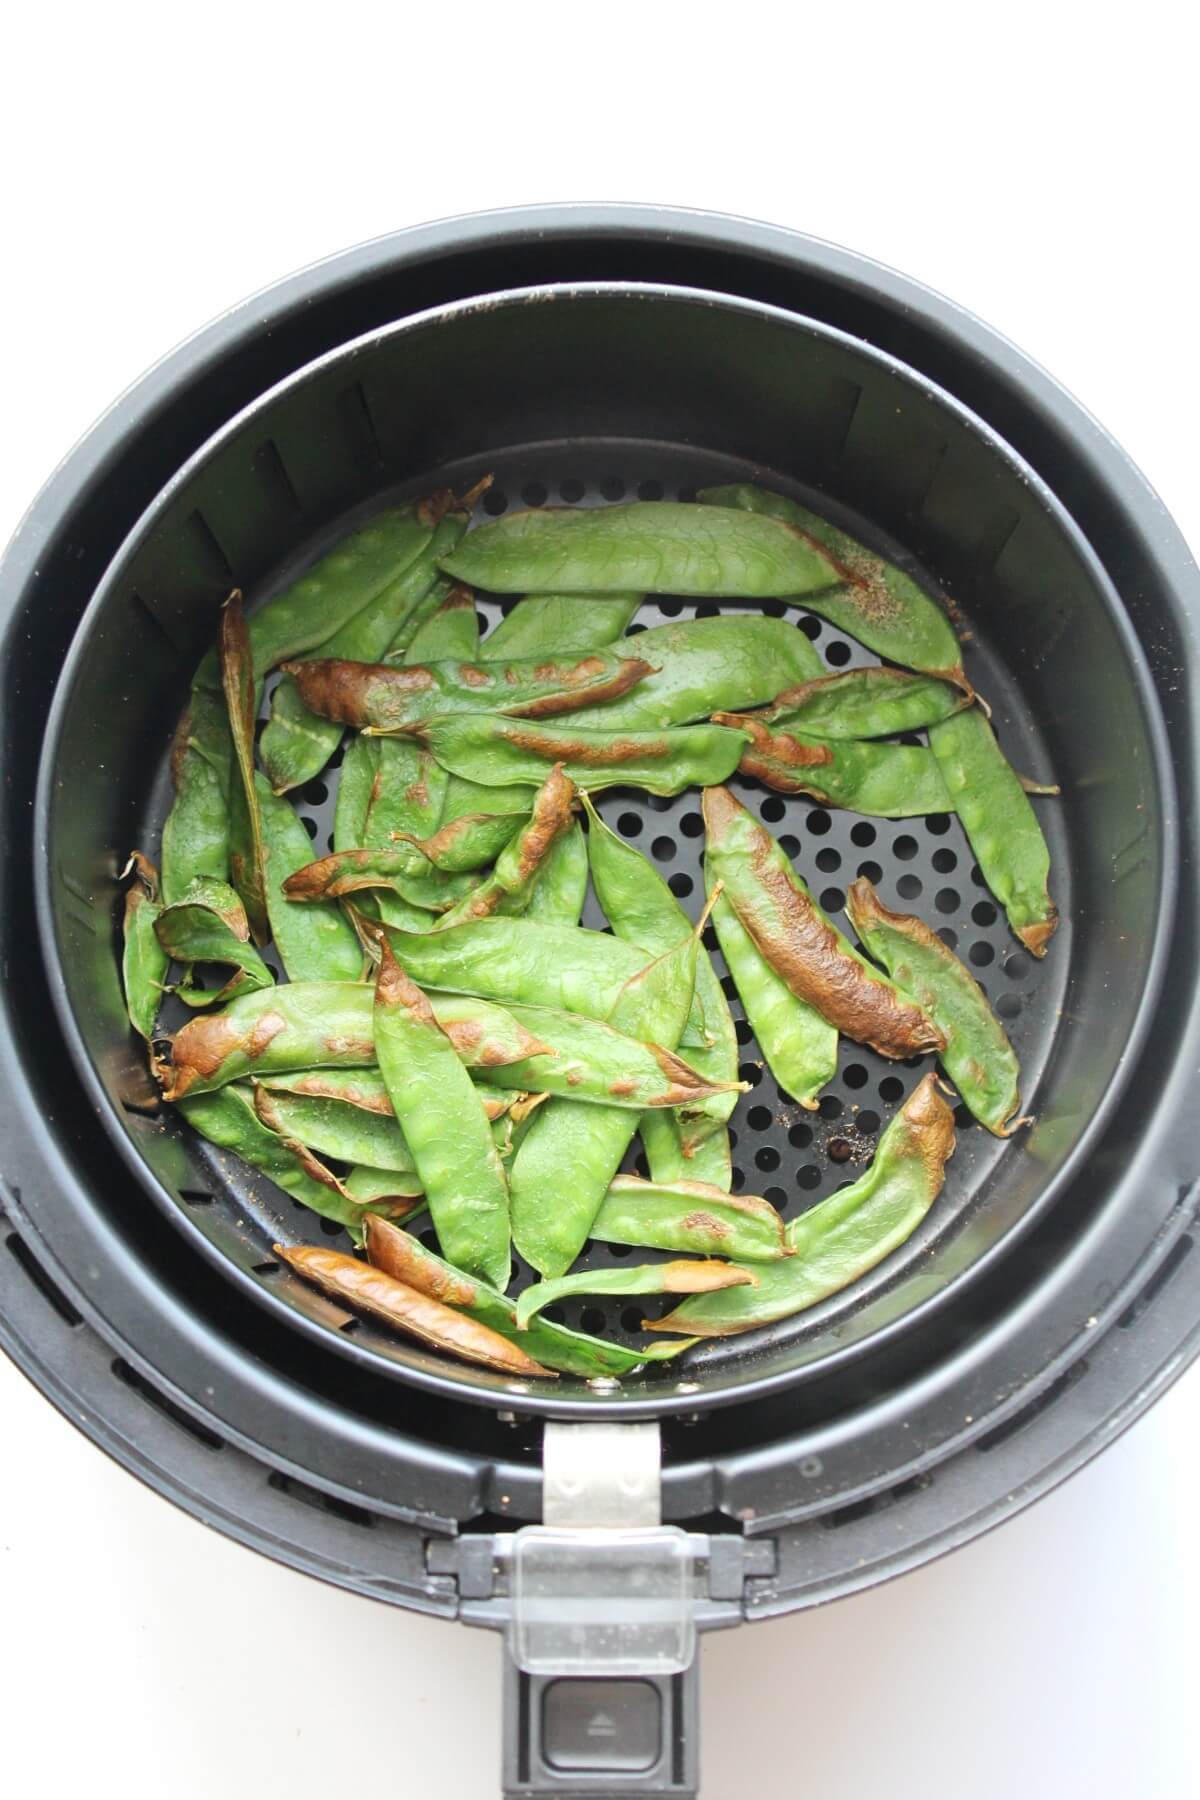 snow peas roasted in the air fryer basket